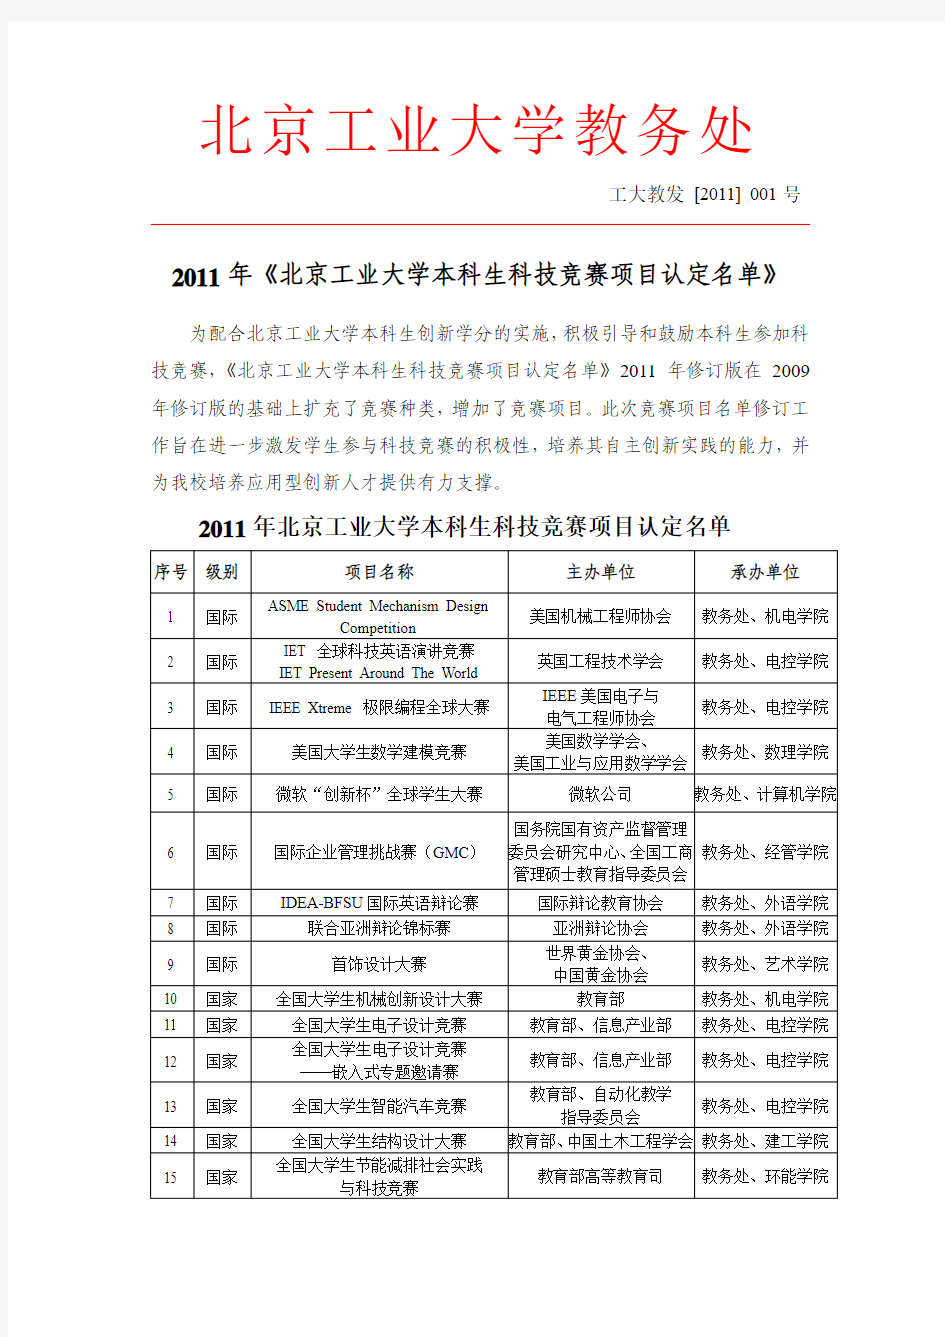 2011年《北京工业大学本科生科技竞赛项目认定名单》--内网公布版